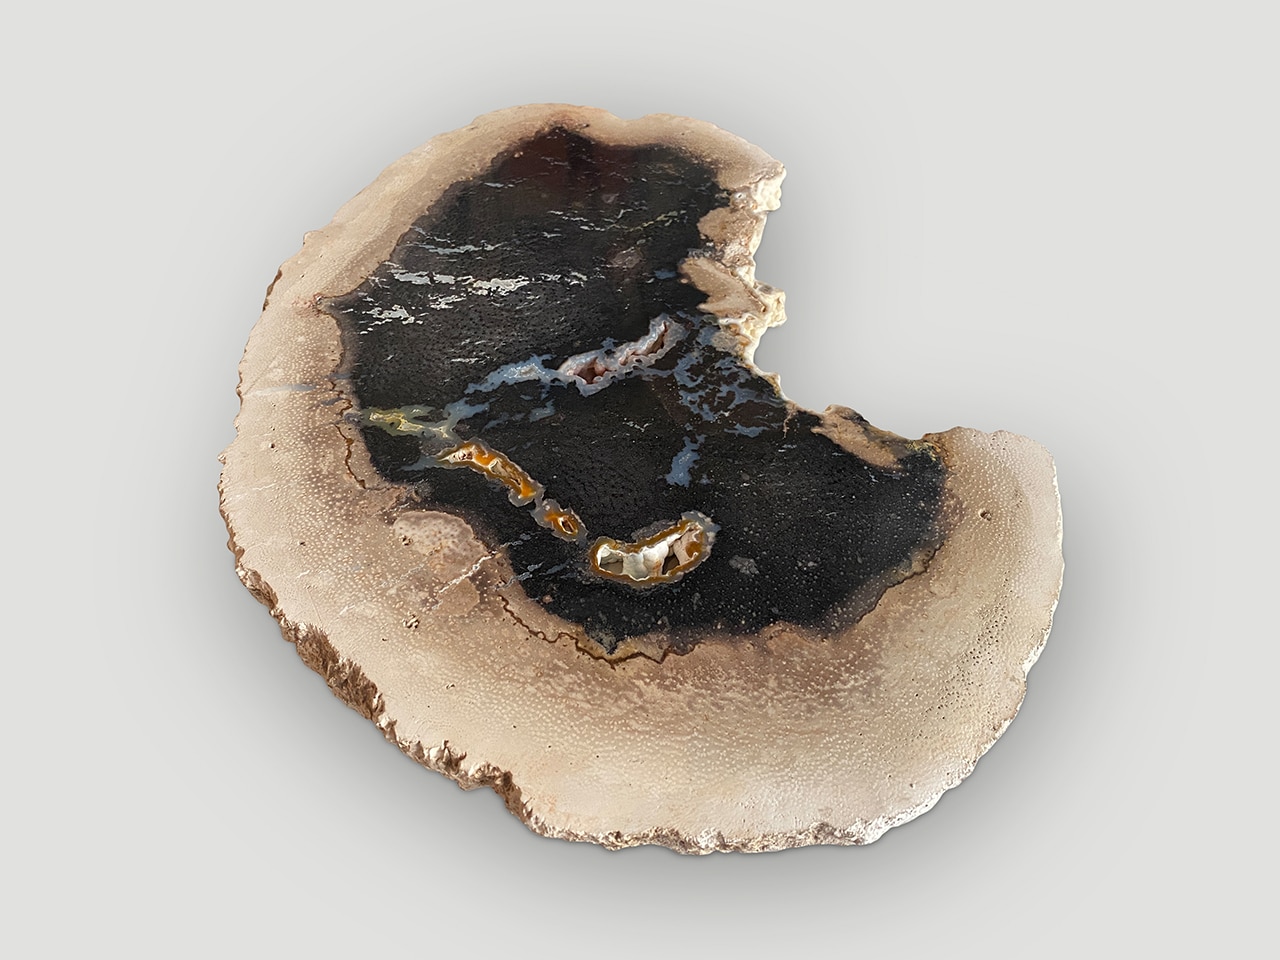 rare palm petrified wood slab